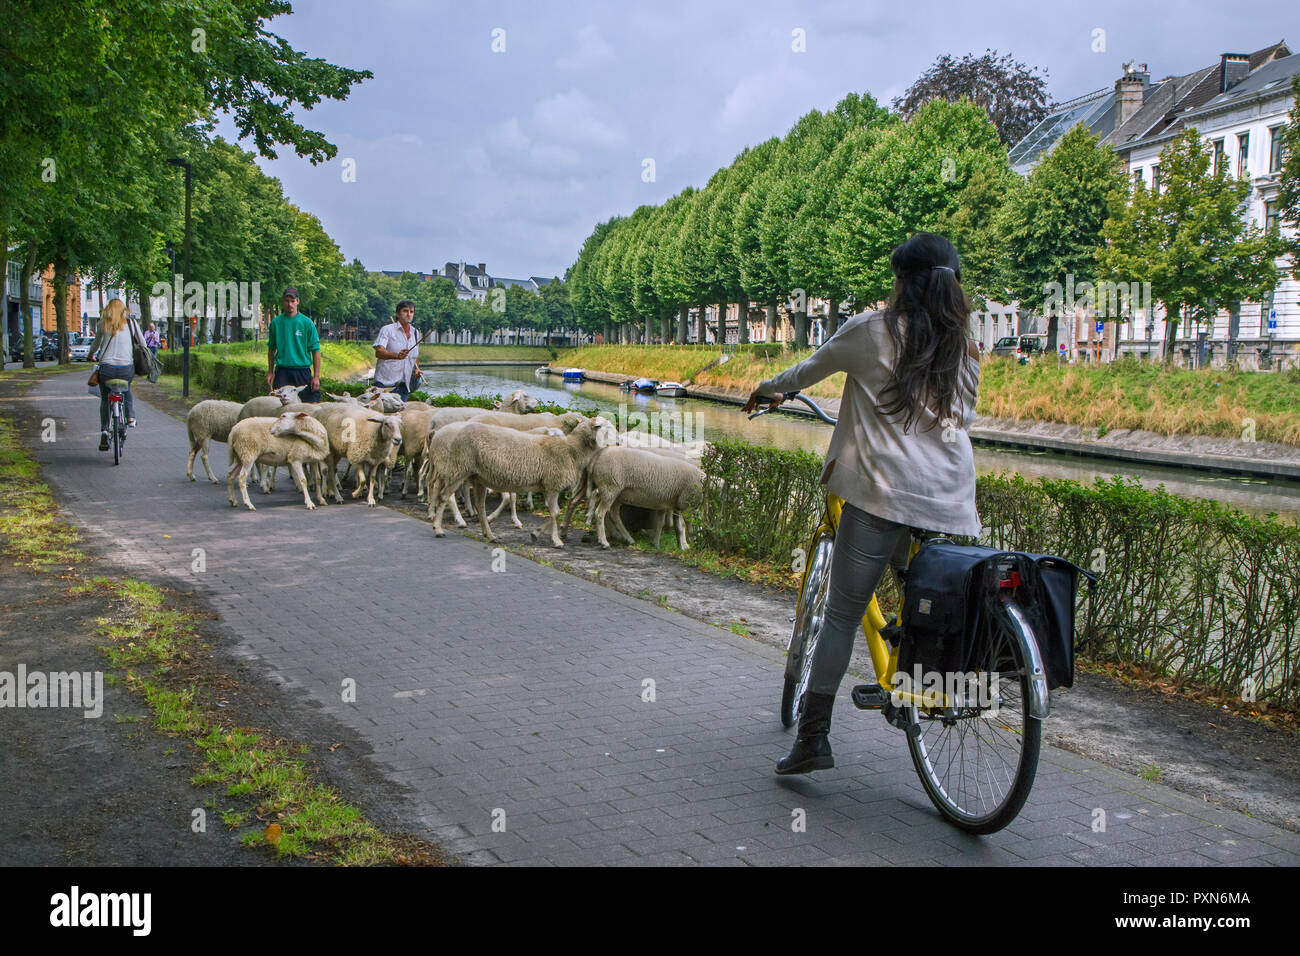 Ciclista parando en bici para pastor pastoreando ovejas pastando hierba a lo largo de la calle Canal del banco en la ciudad de Gante, Flandes, Bélgica Foto de stock